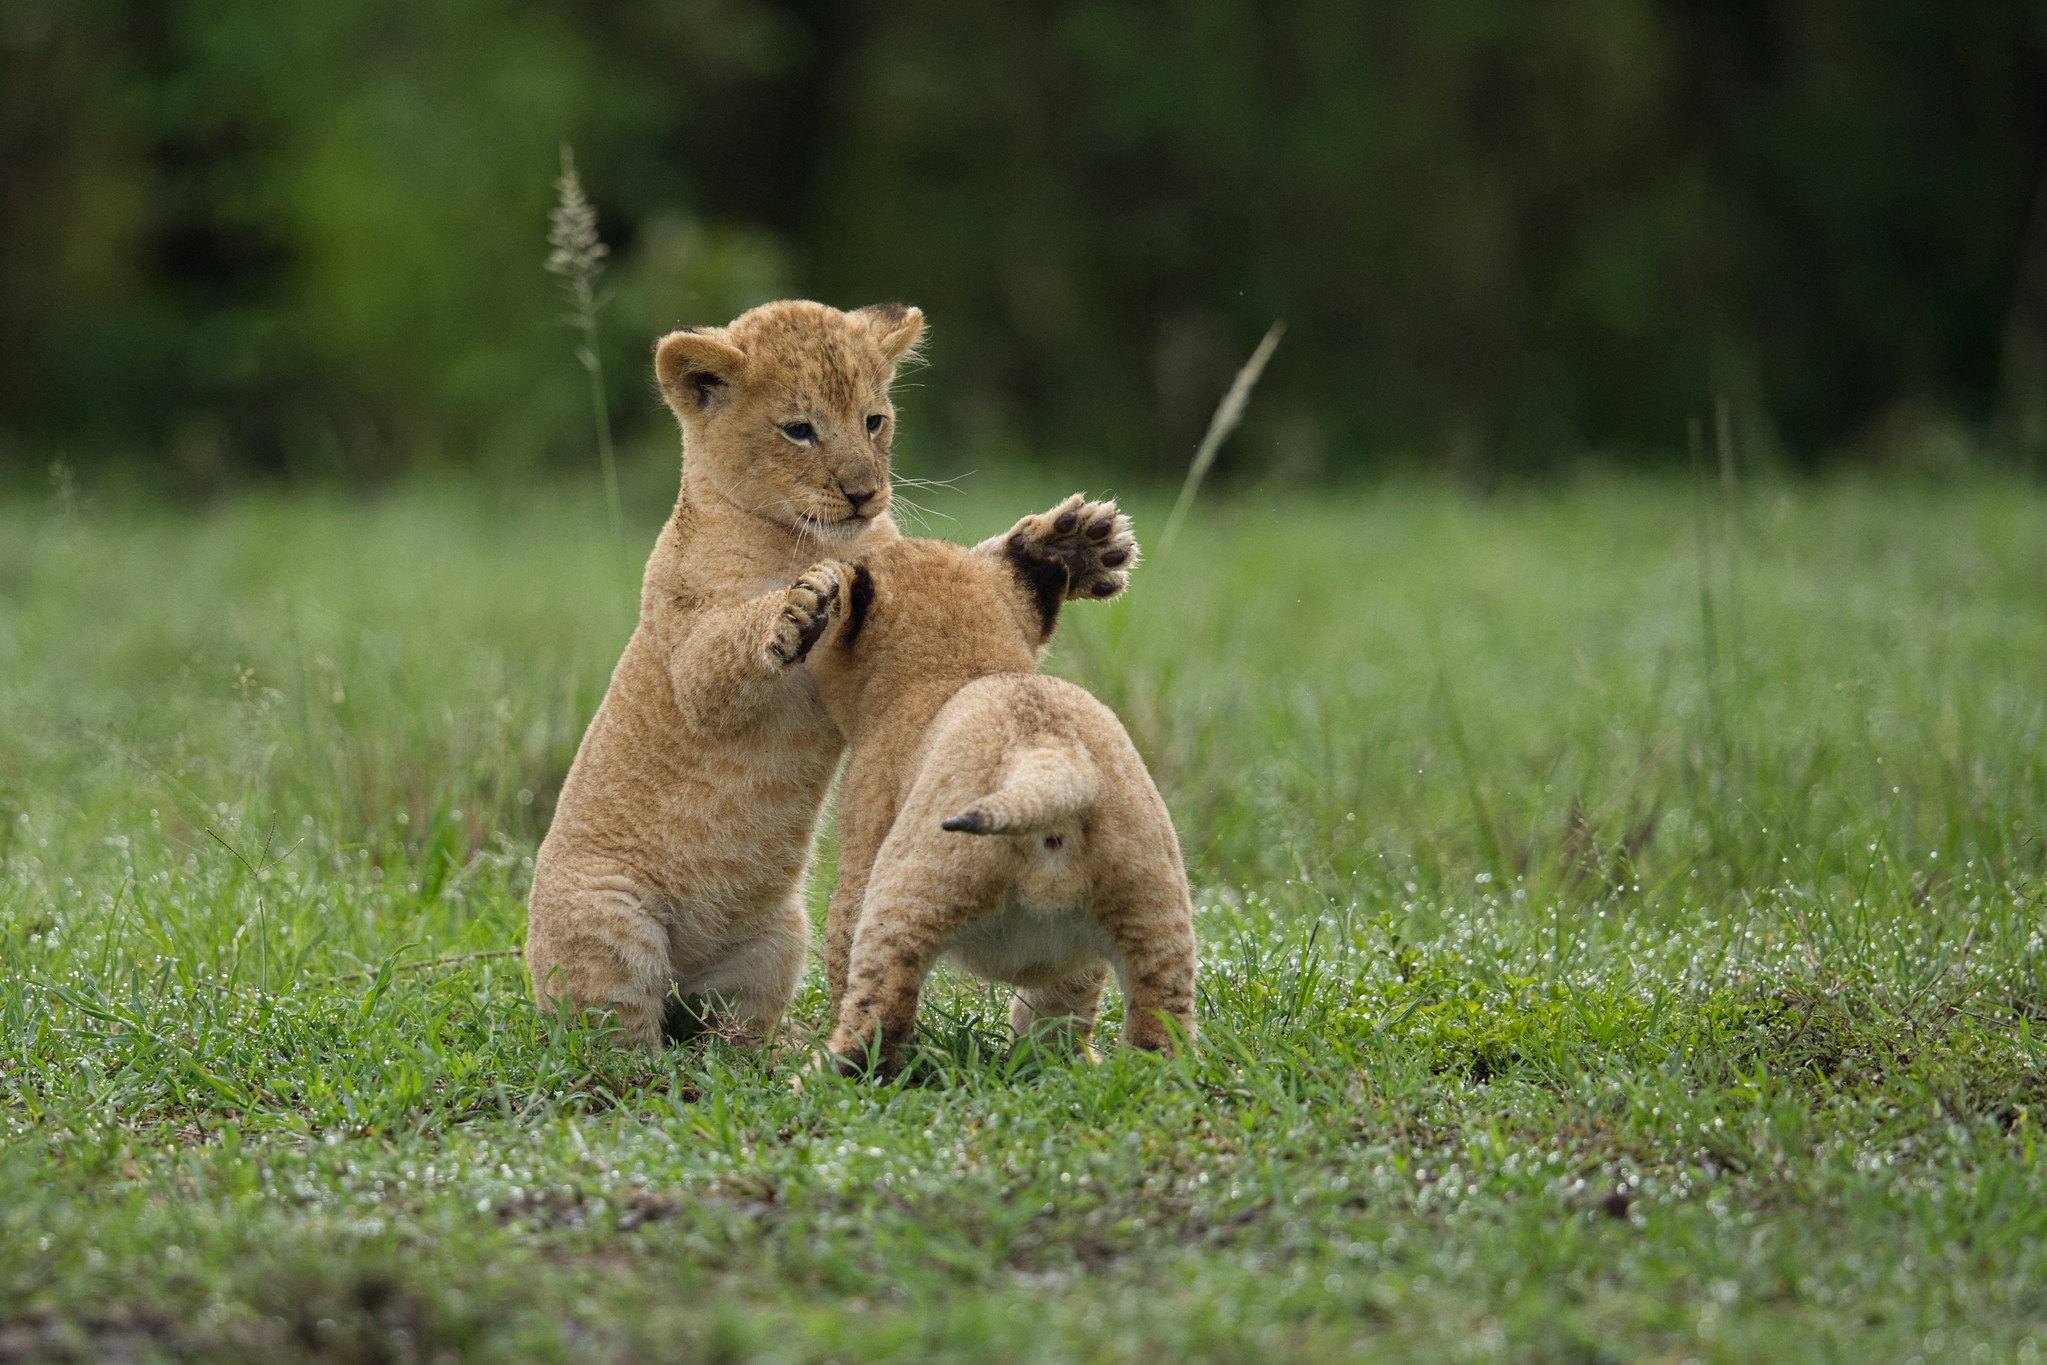 Lions - Masai Mara